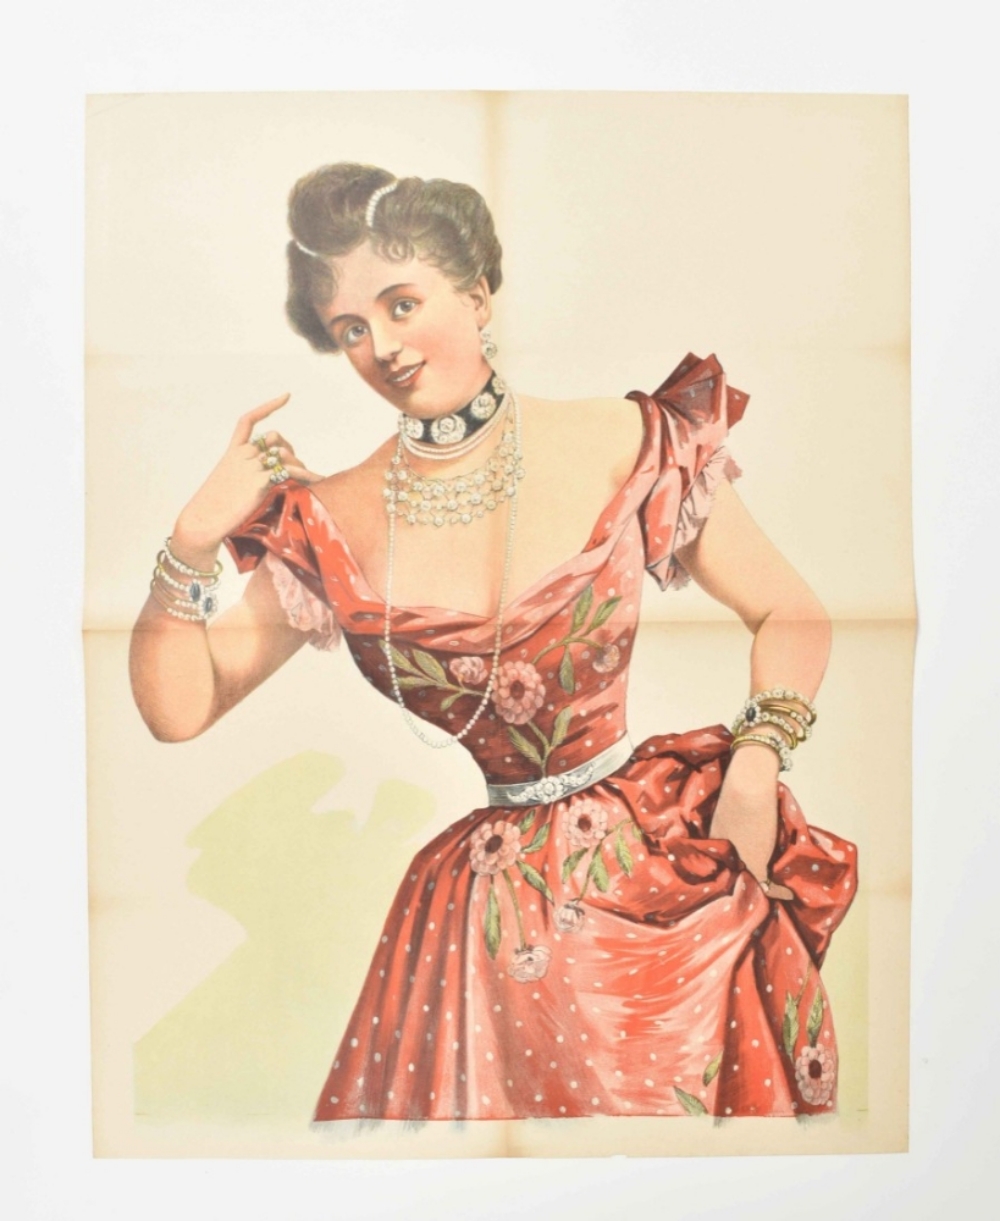 [Entertainment] Nora Gillis. La reine du chic Friedländer, Hamburg, 1891 - Image 3 of 6